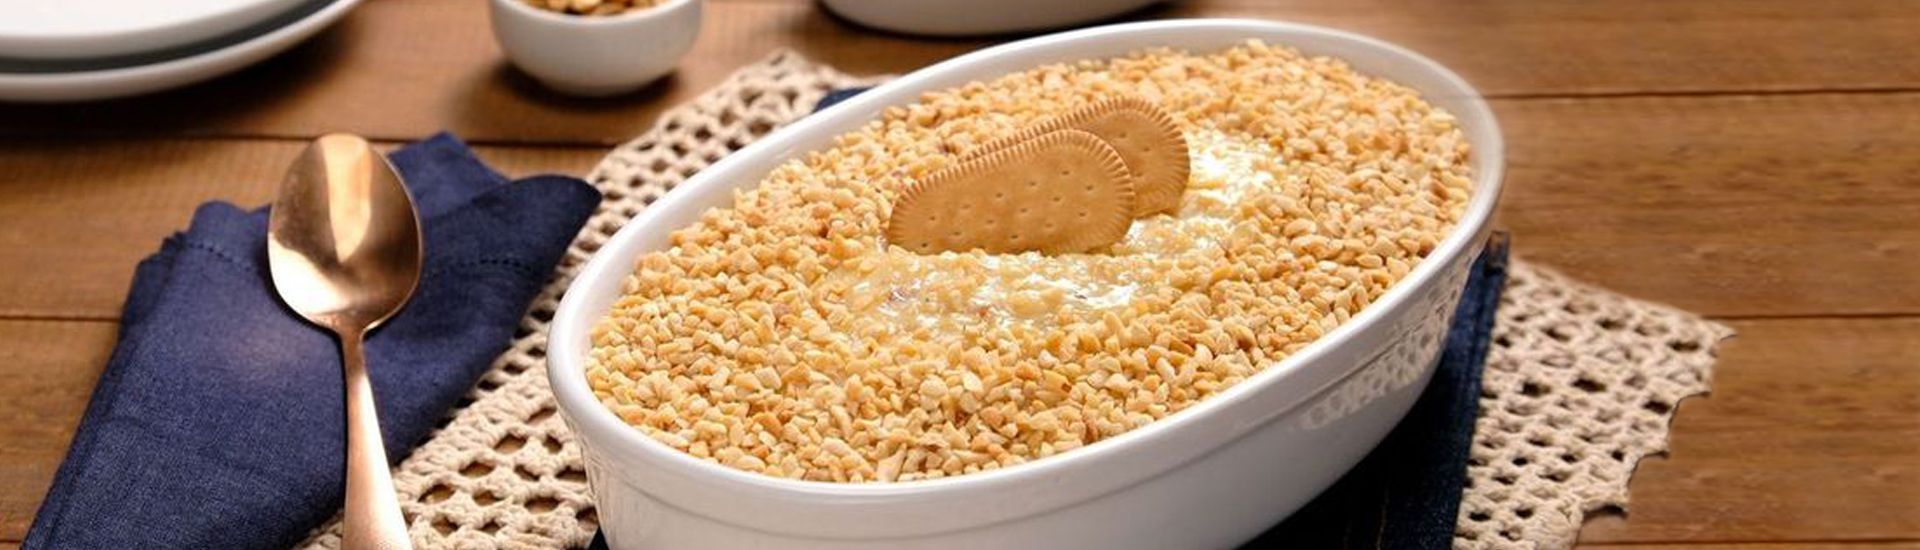 Pavê de amendoim: Receita, Como Fazer e Ingredientes